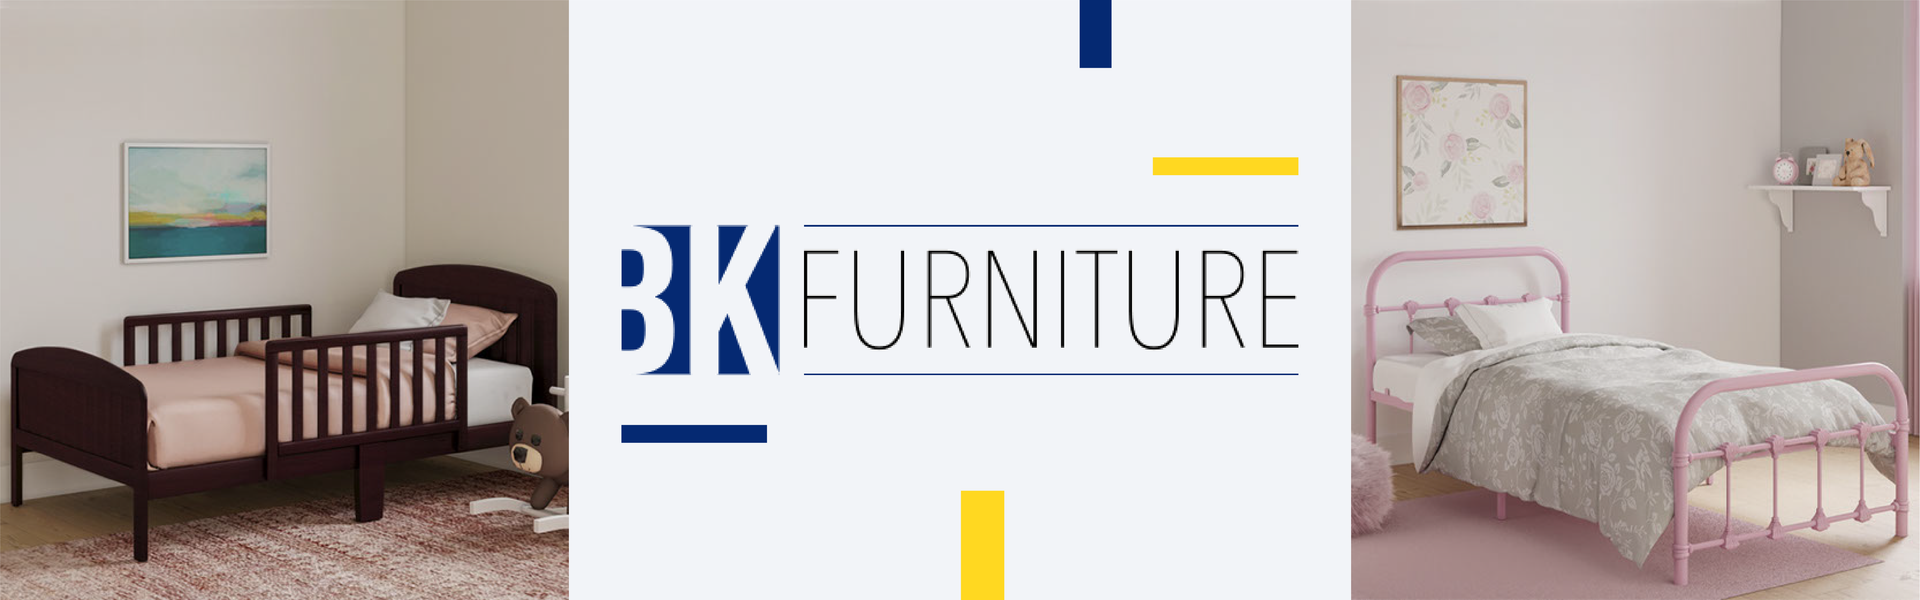 BK Furniture